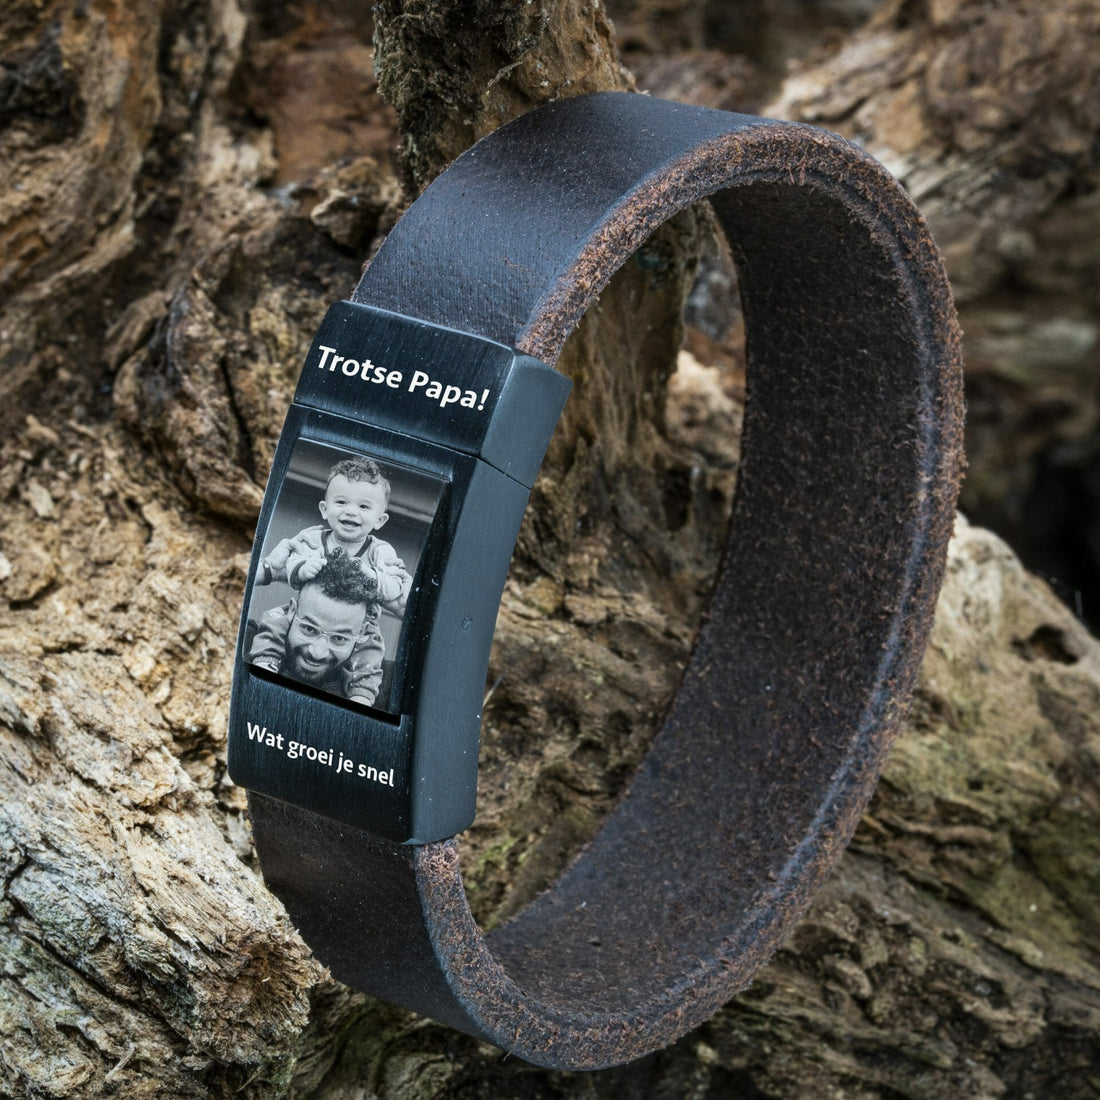 Eigenes Foto am Armband – Geflochtenes schwarzes Lederarmband mit Fotodruck